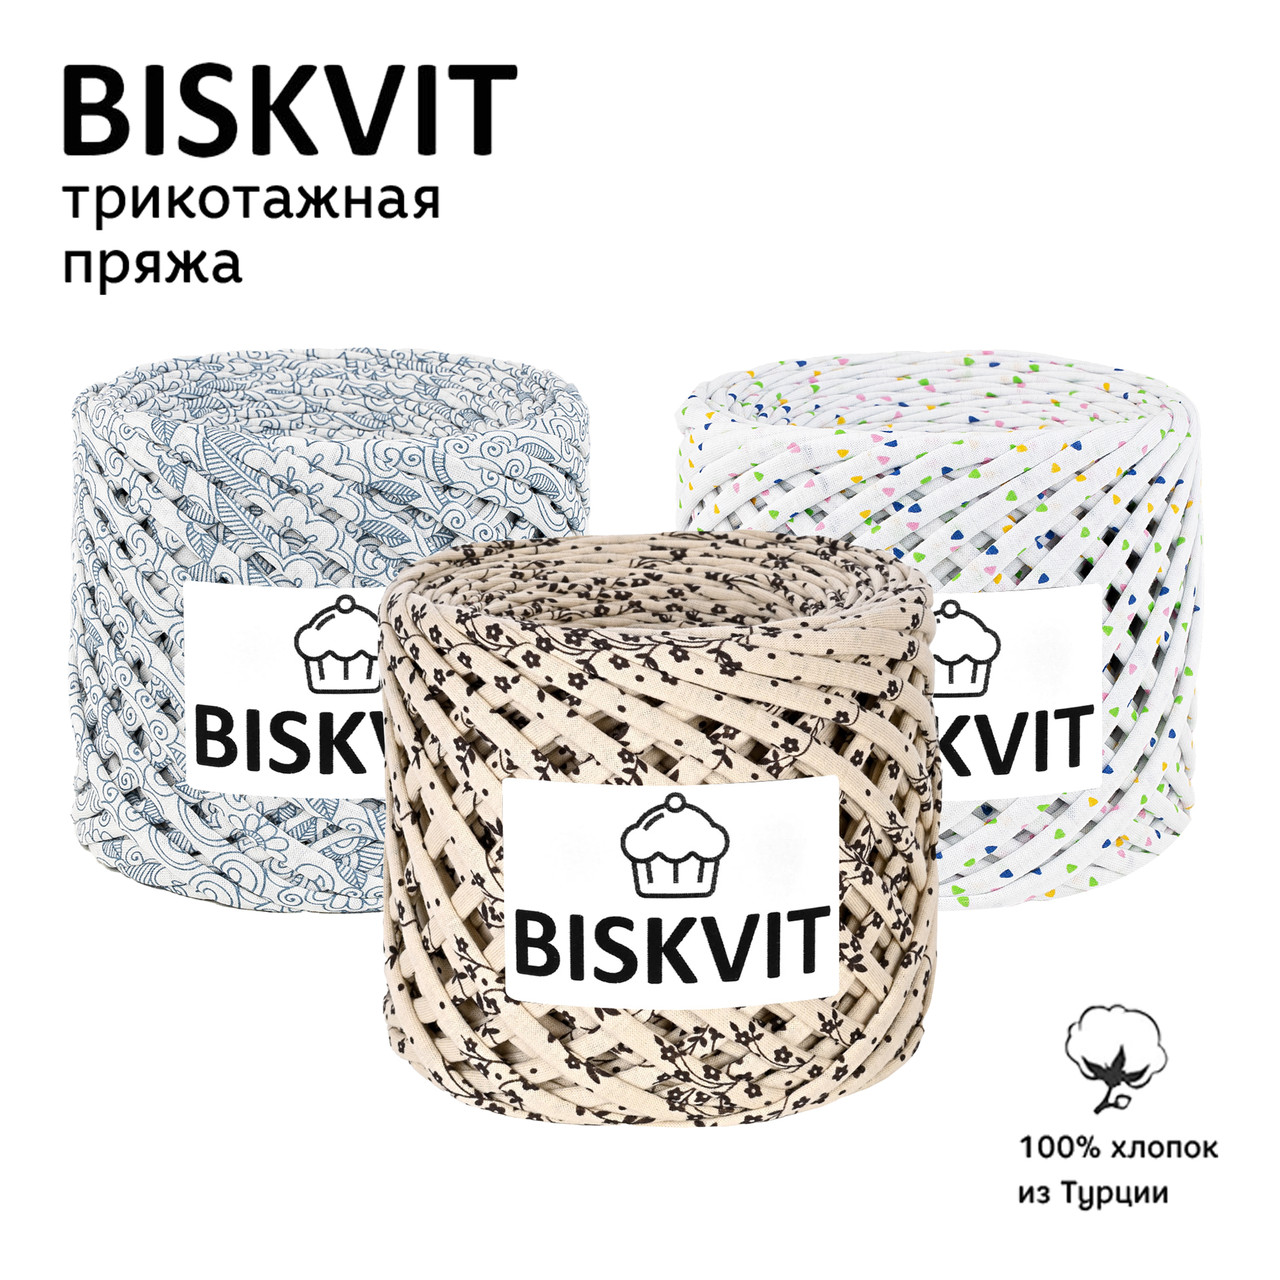 Biskvit (Бисквит) лимитированная коллекция